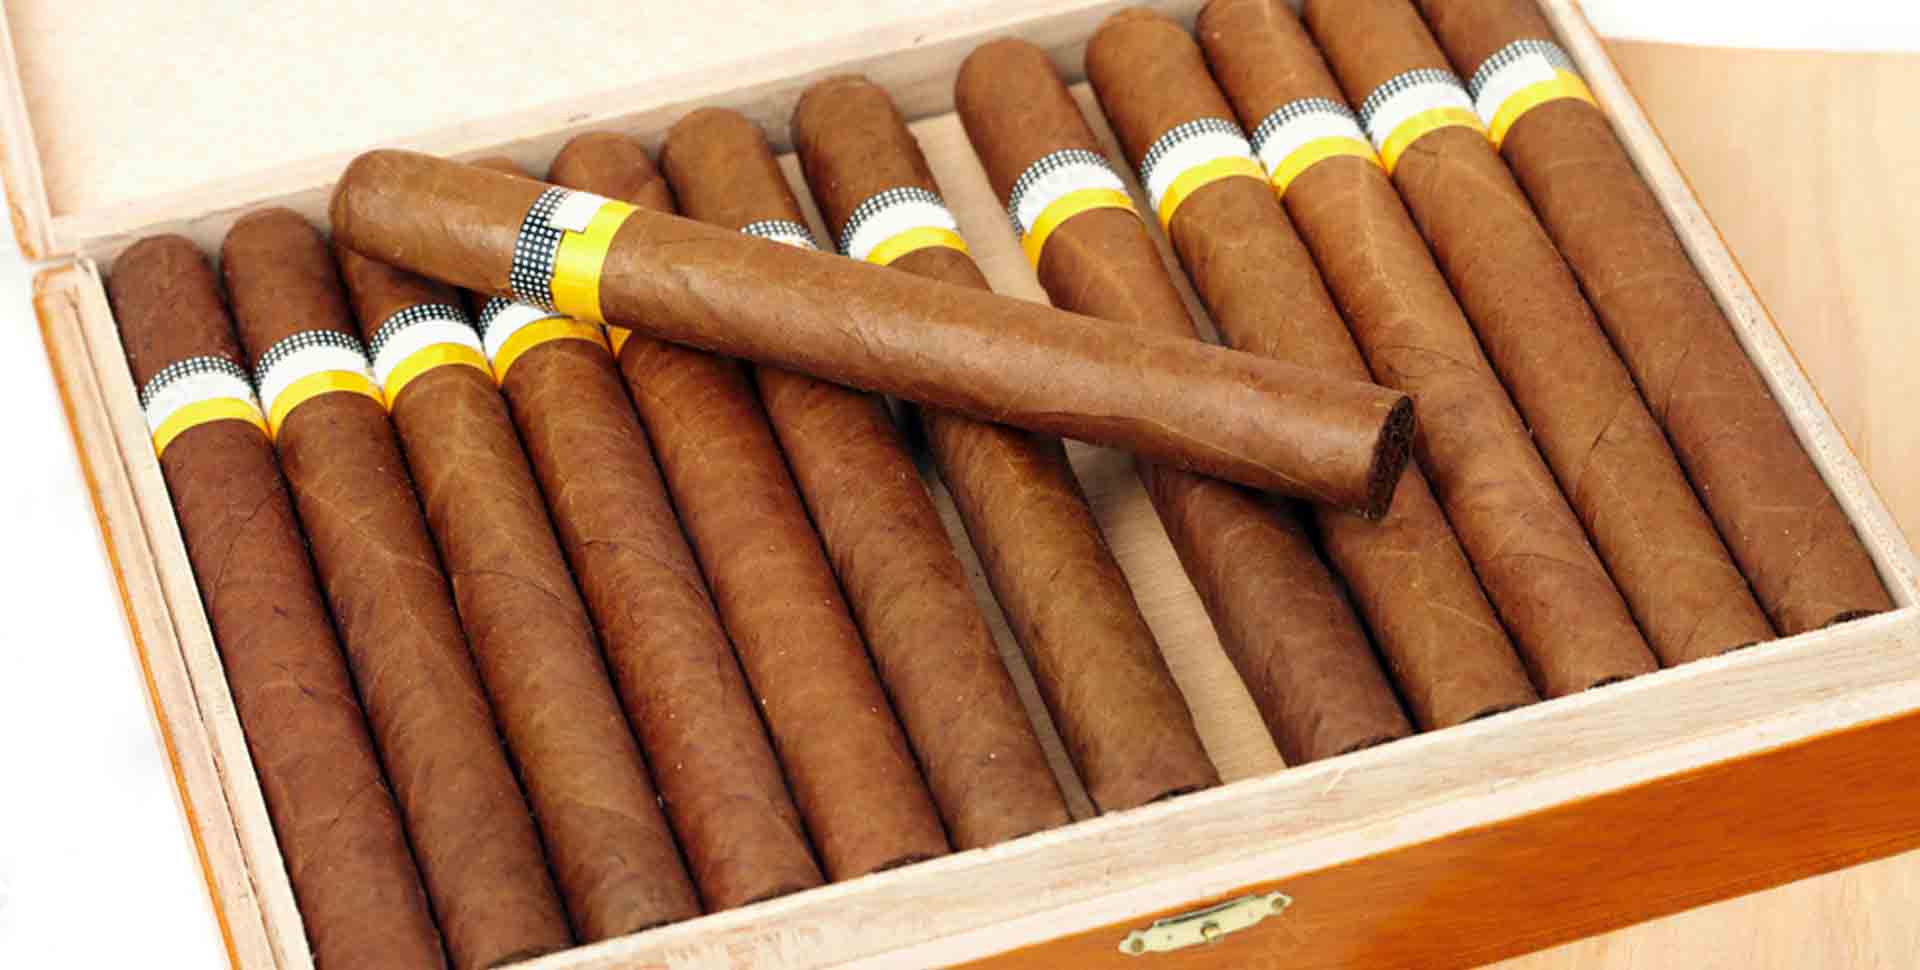 Cigary balenia - krabica s cigarami značky Cohiba